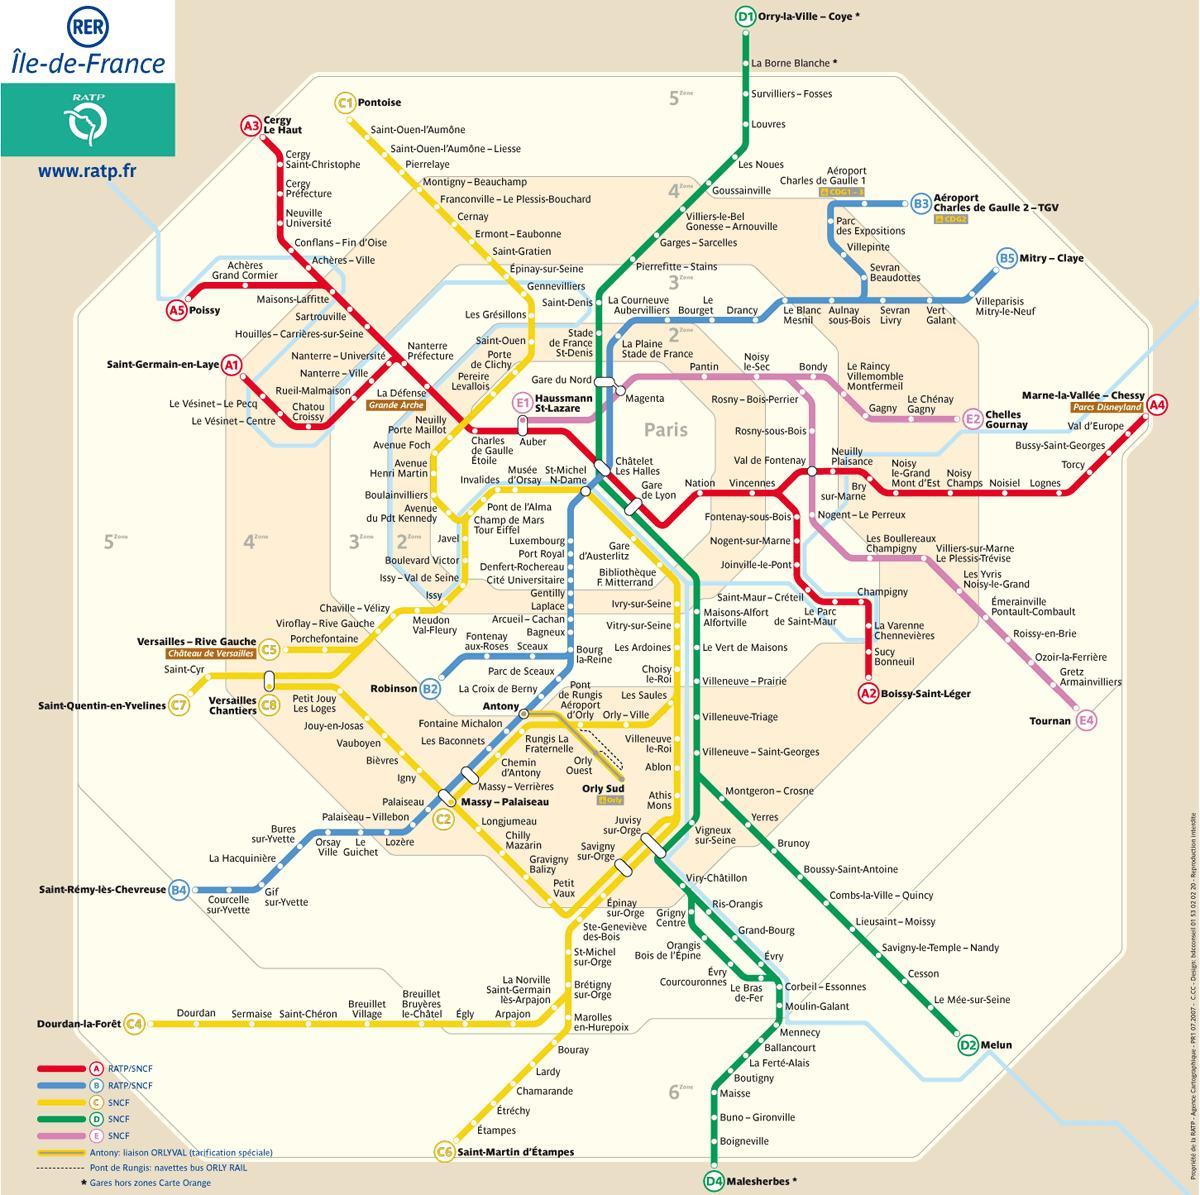 Mapa ng RER